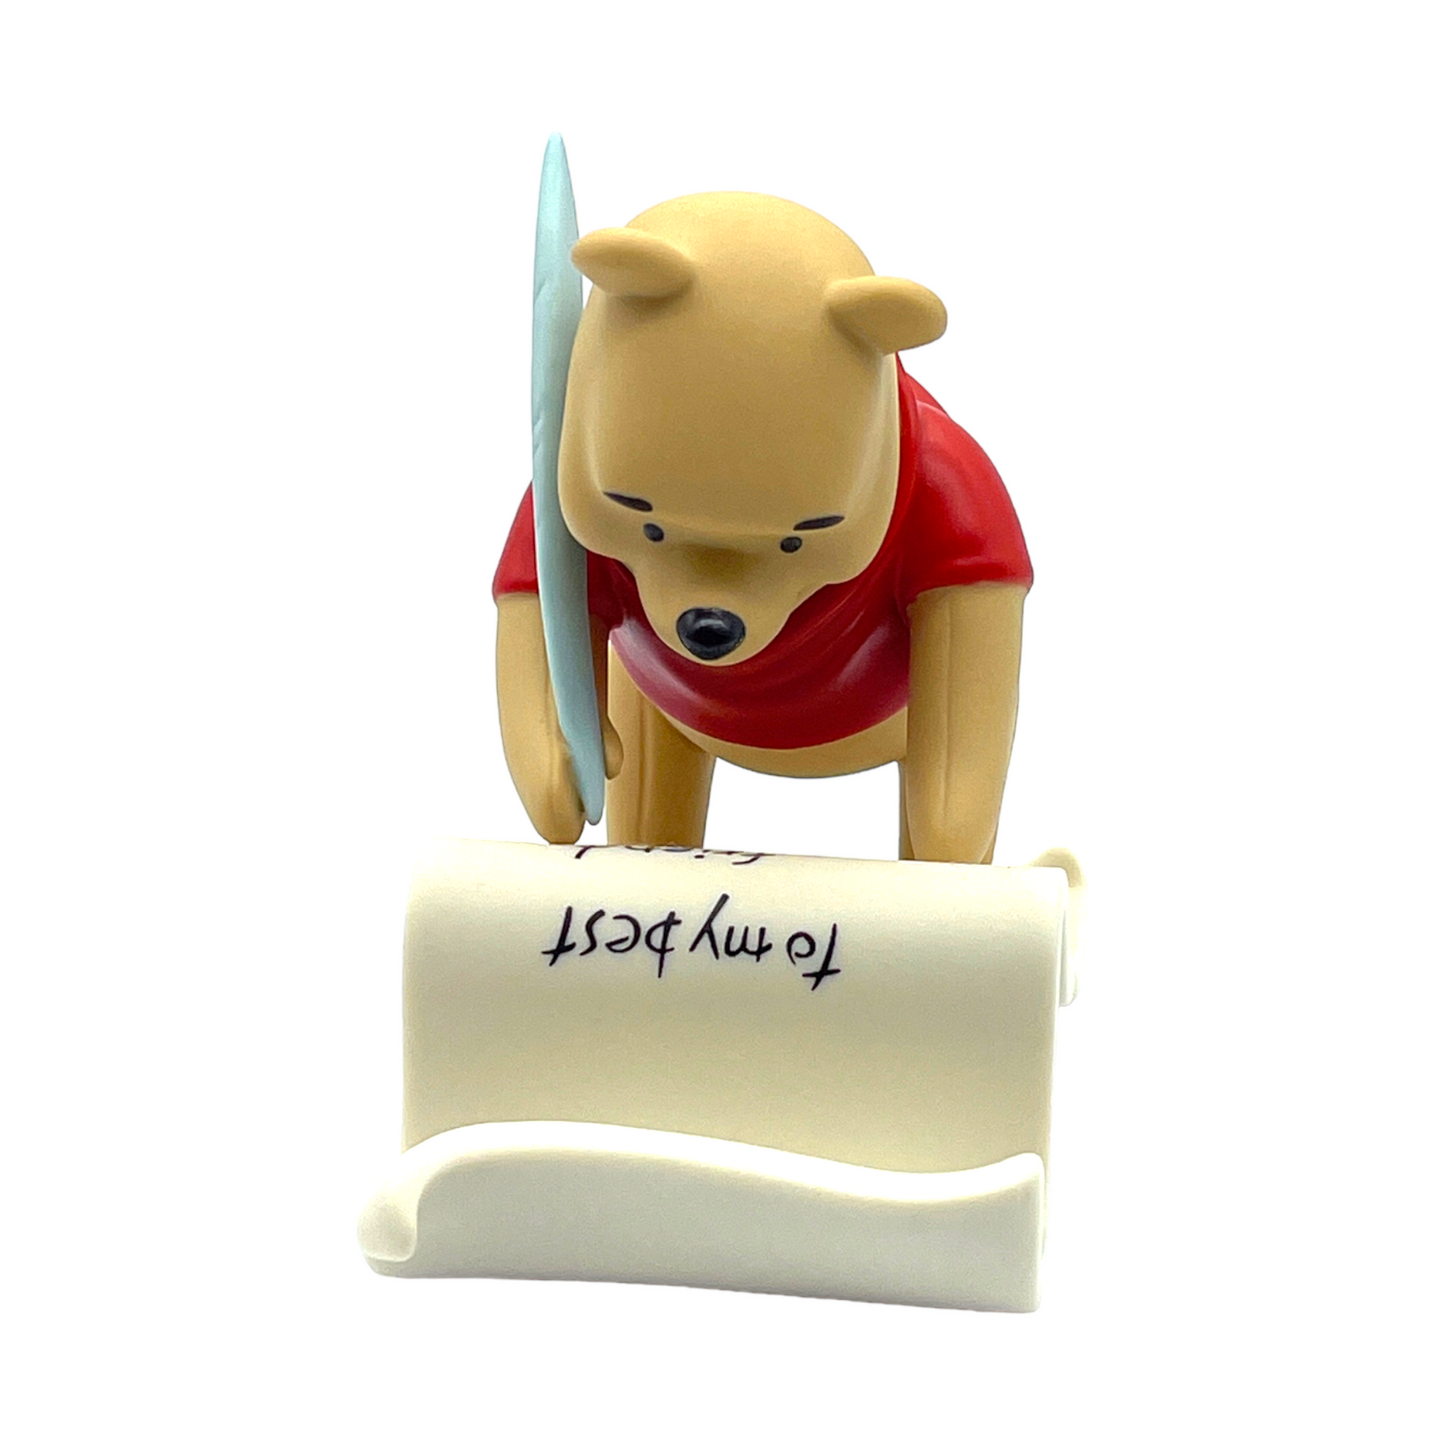 Pooh & Friends - "Pooh Spells Friendship Y.O.U." Figurine - With Box - 4"